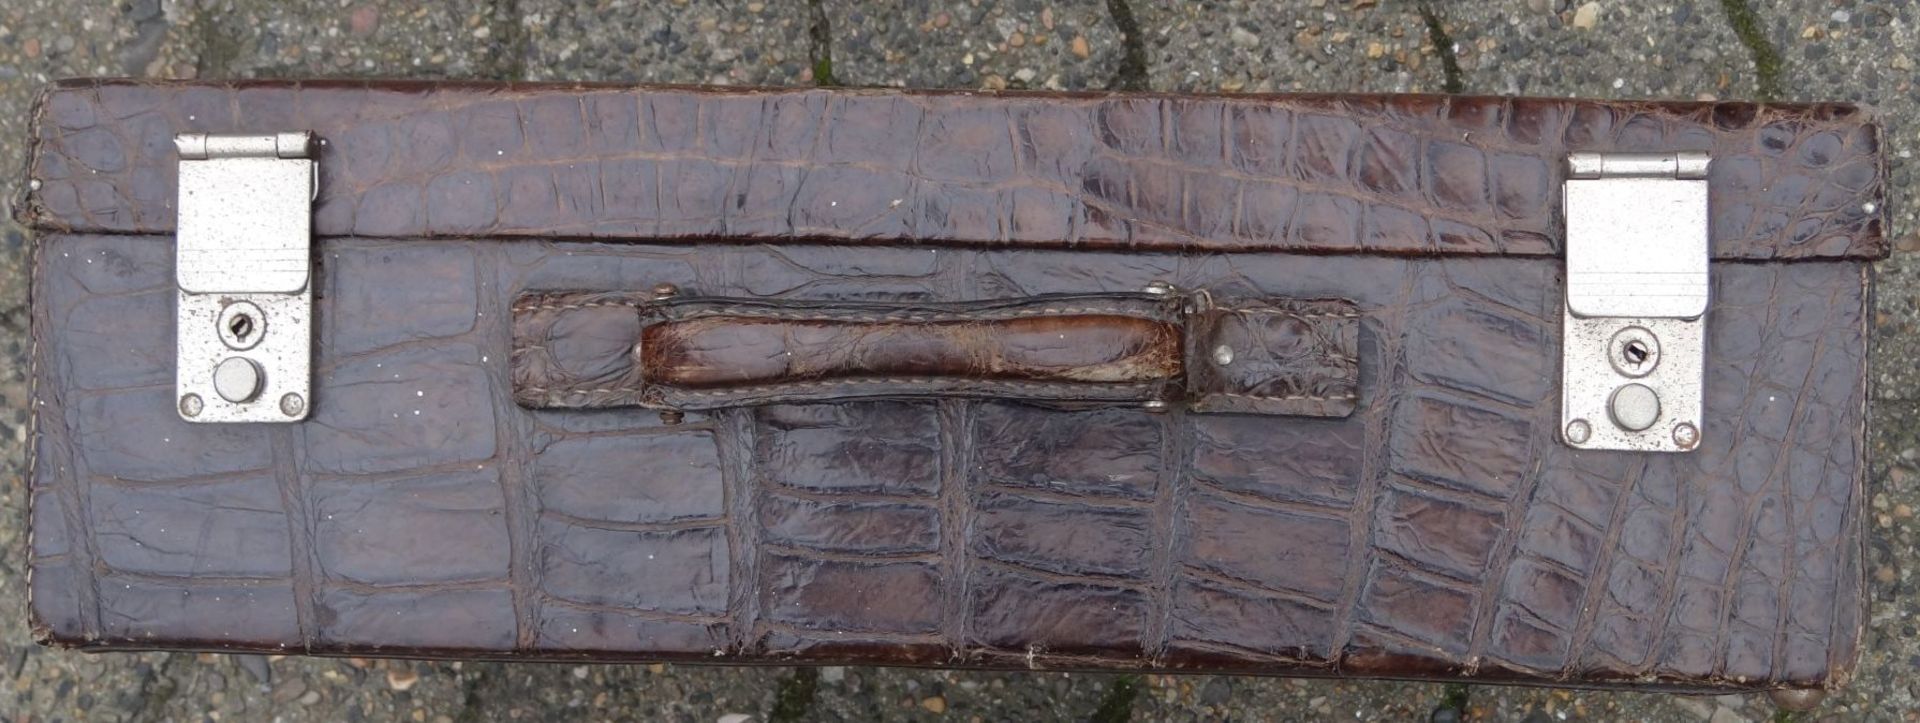 Handkoffer, Krokoleder, Alters-u. Gebrauchsspuren, H-17 cm, 34x50 cm